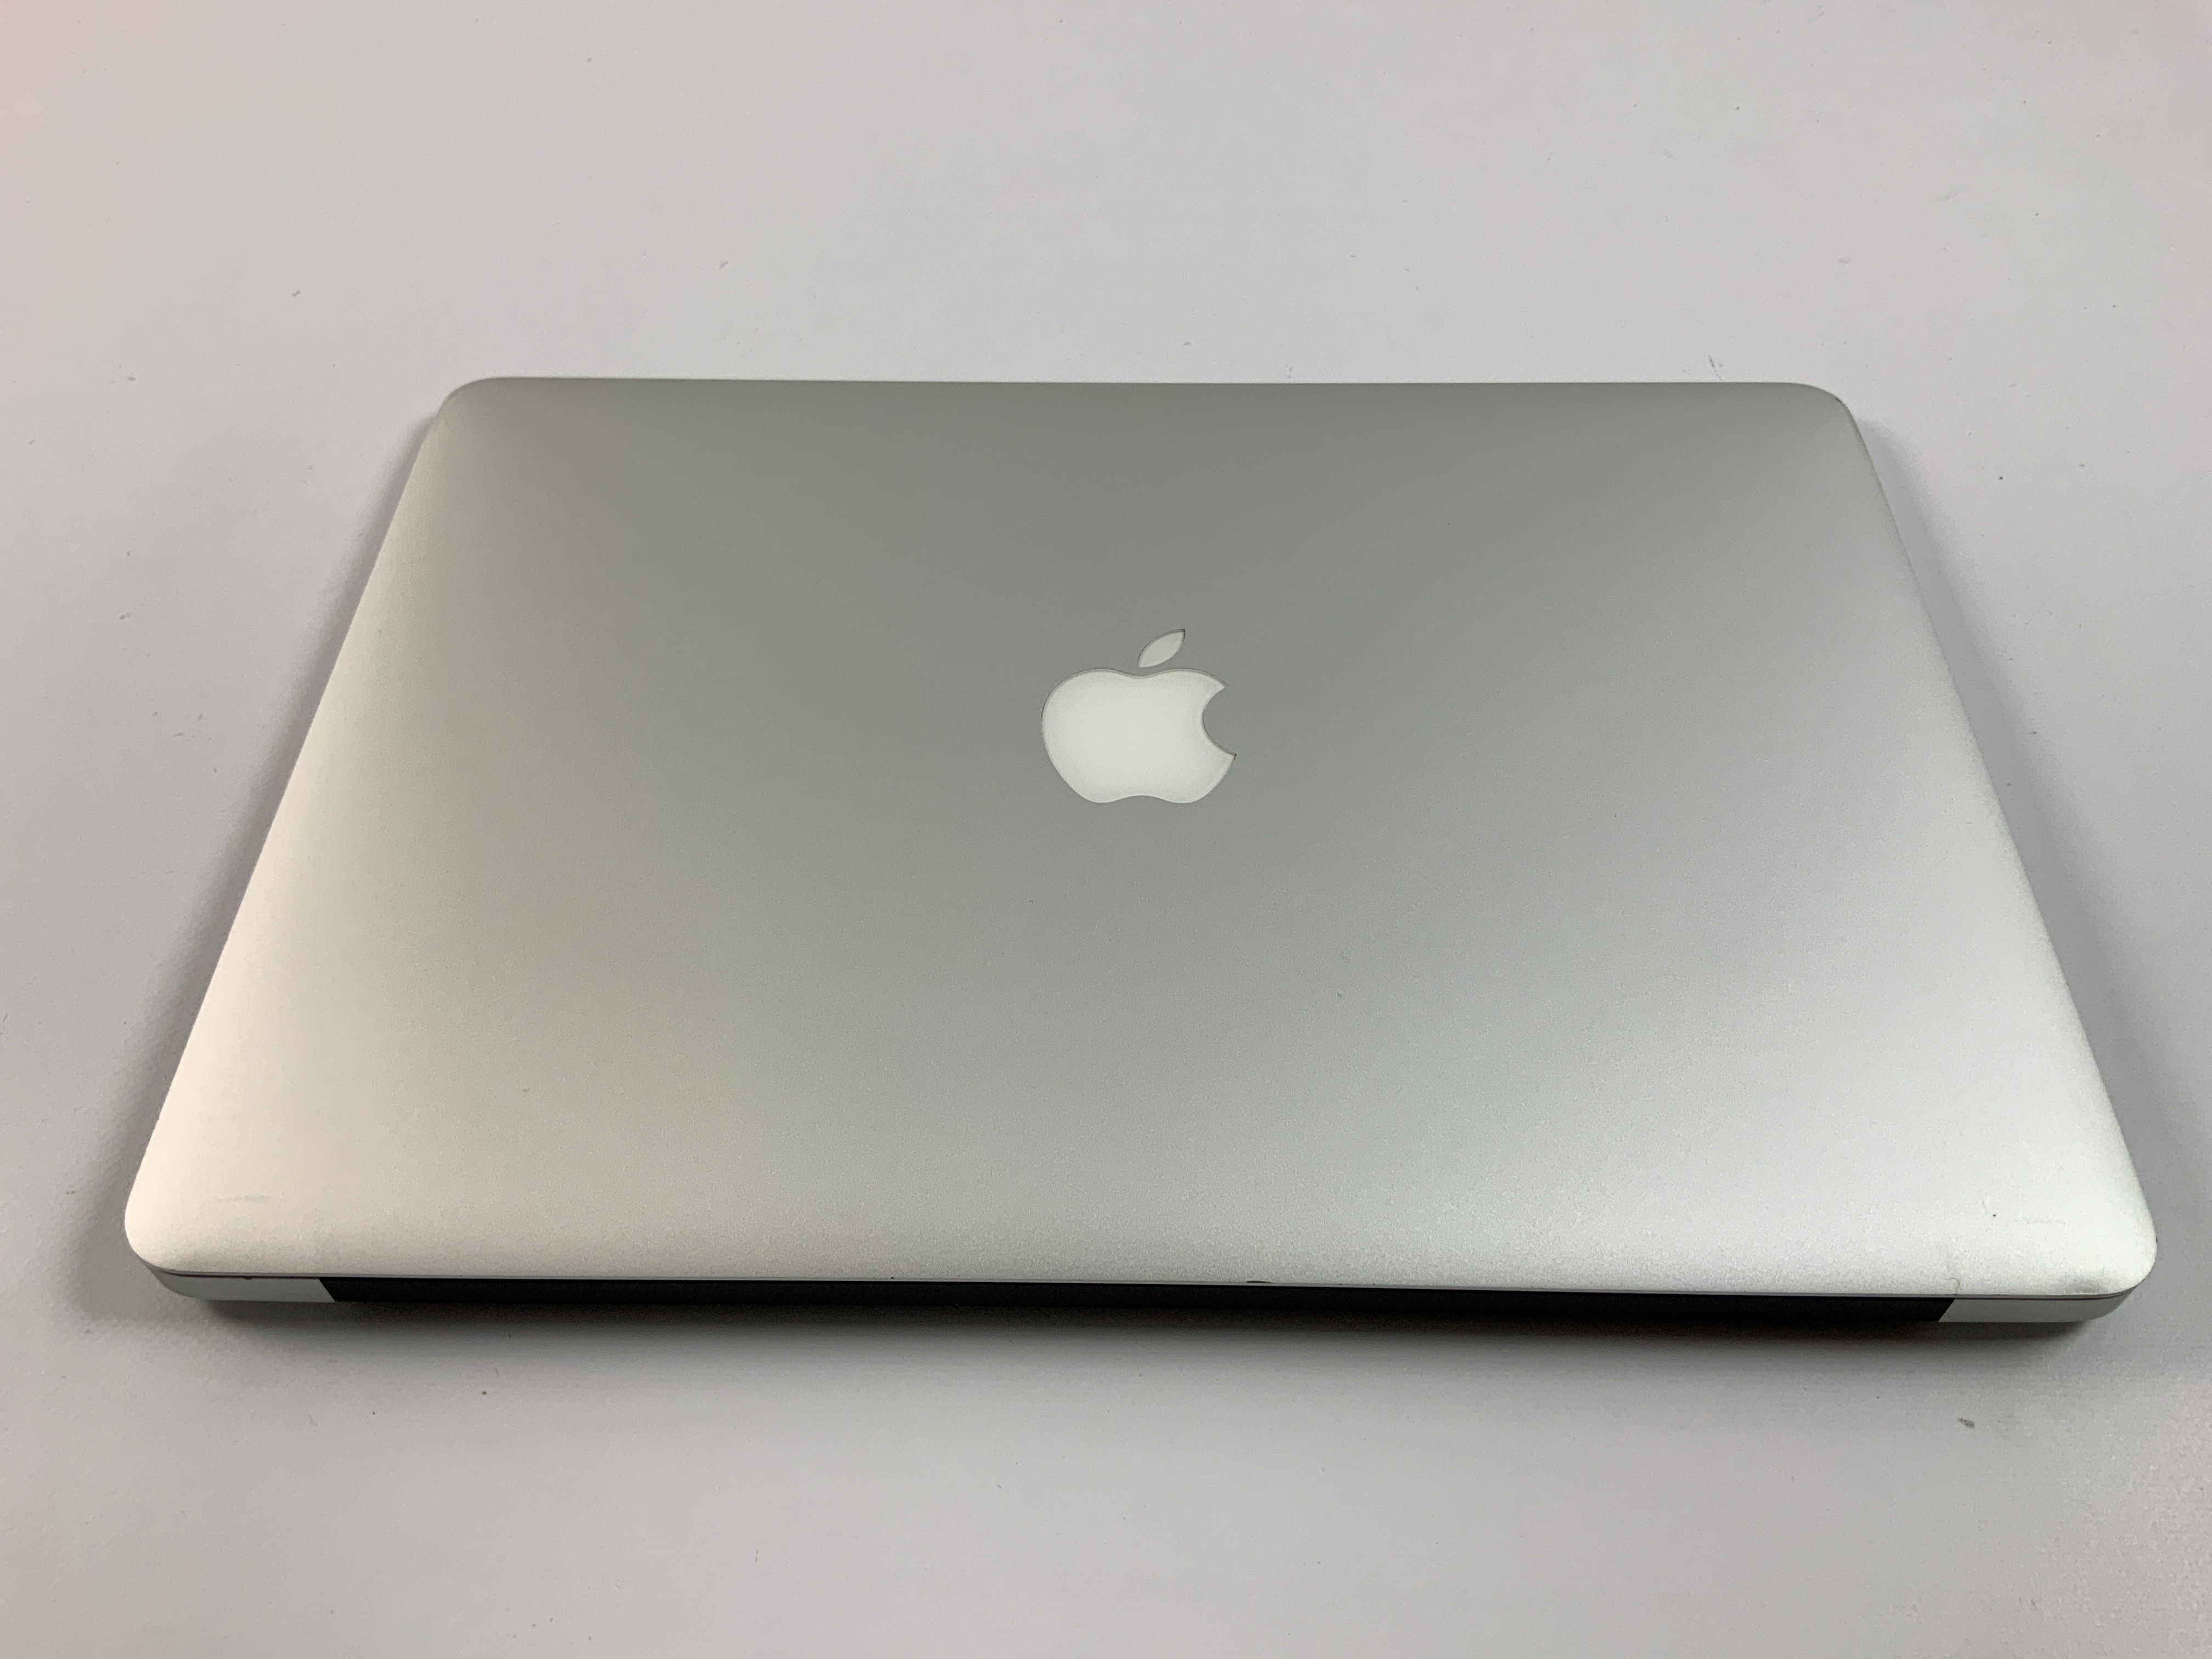 MacBook Air 13" Mid 2017 (Intel Core i5 1.8 GHz 8 GB RAM 128 GB SSD), Intel Core i5 1.8 GHz, 8 GB RAM, 128 GB SSD, Afbeelding 2